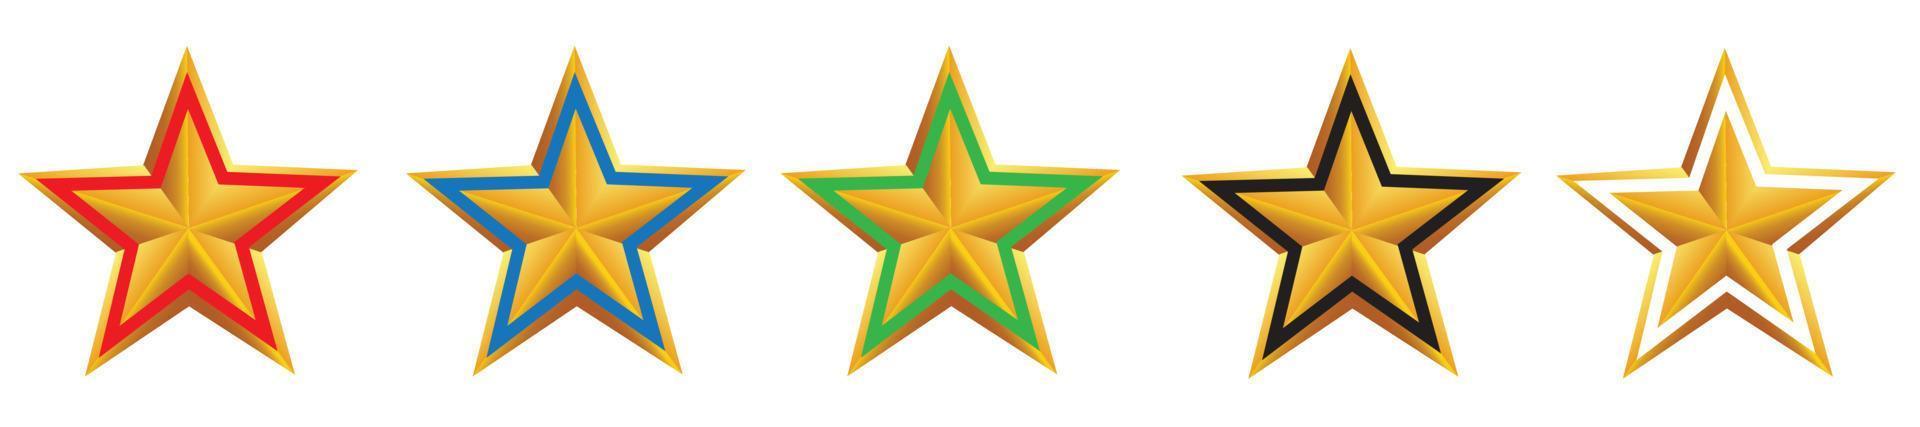 vectorillustratie van gouden ster met gekleurd frame vector